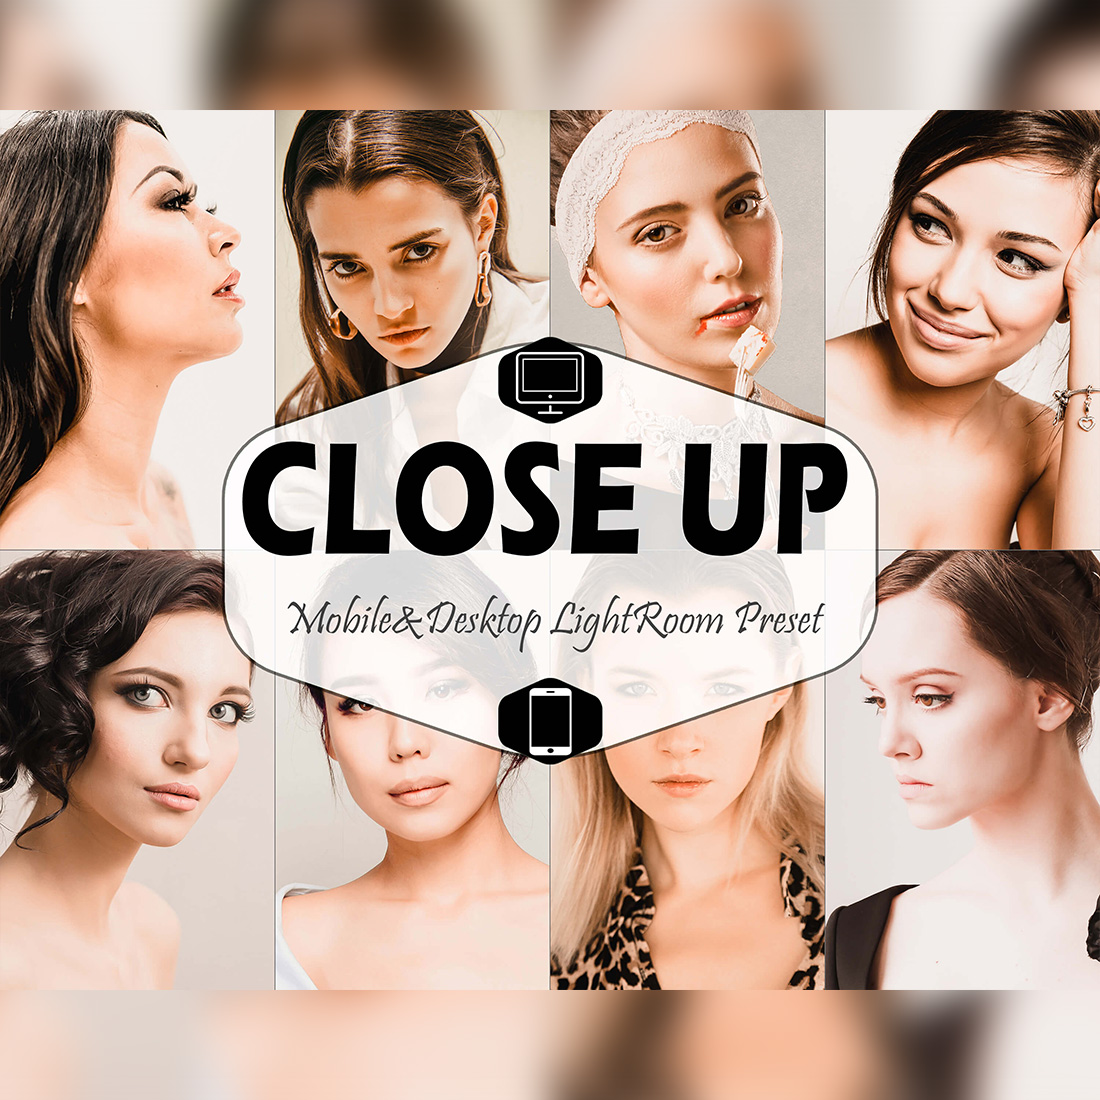 Close Up Mobile & Desktop Lightroom Presets, Portrait LR preset, Selfie Trendy Filter , Best Blogger Travel Lifestyle Instagram Theme cover image.